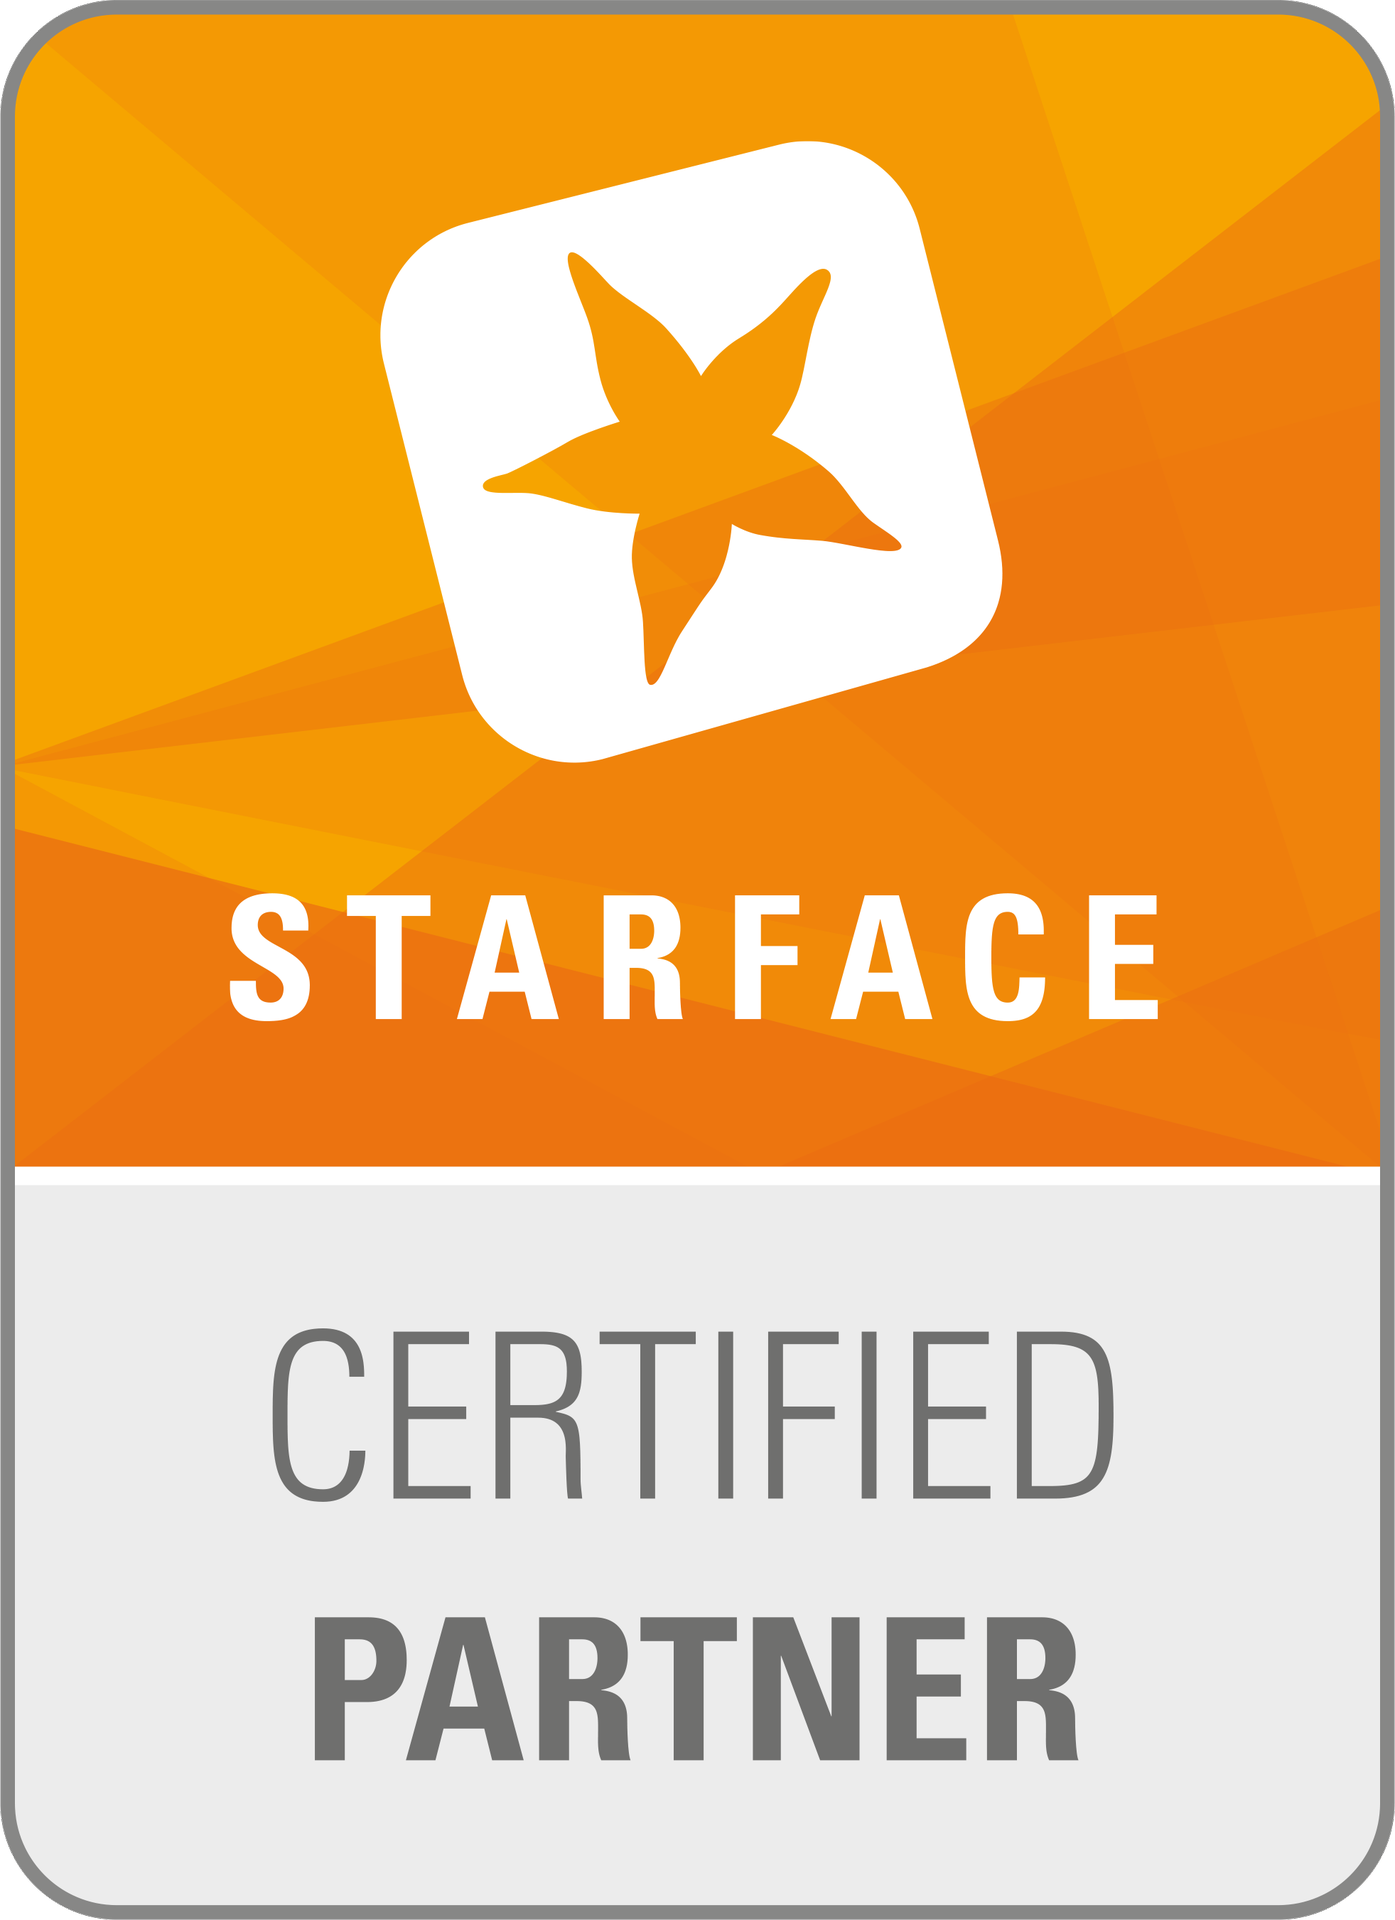 Starface Partner